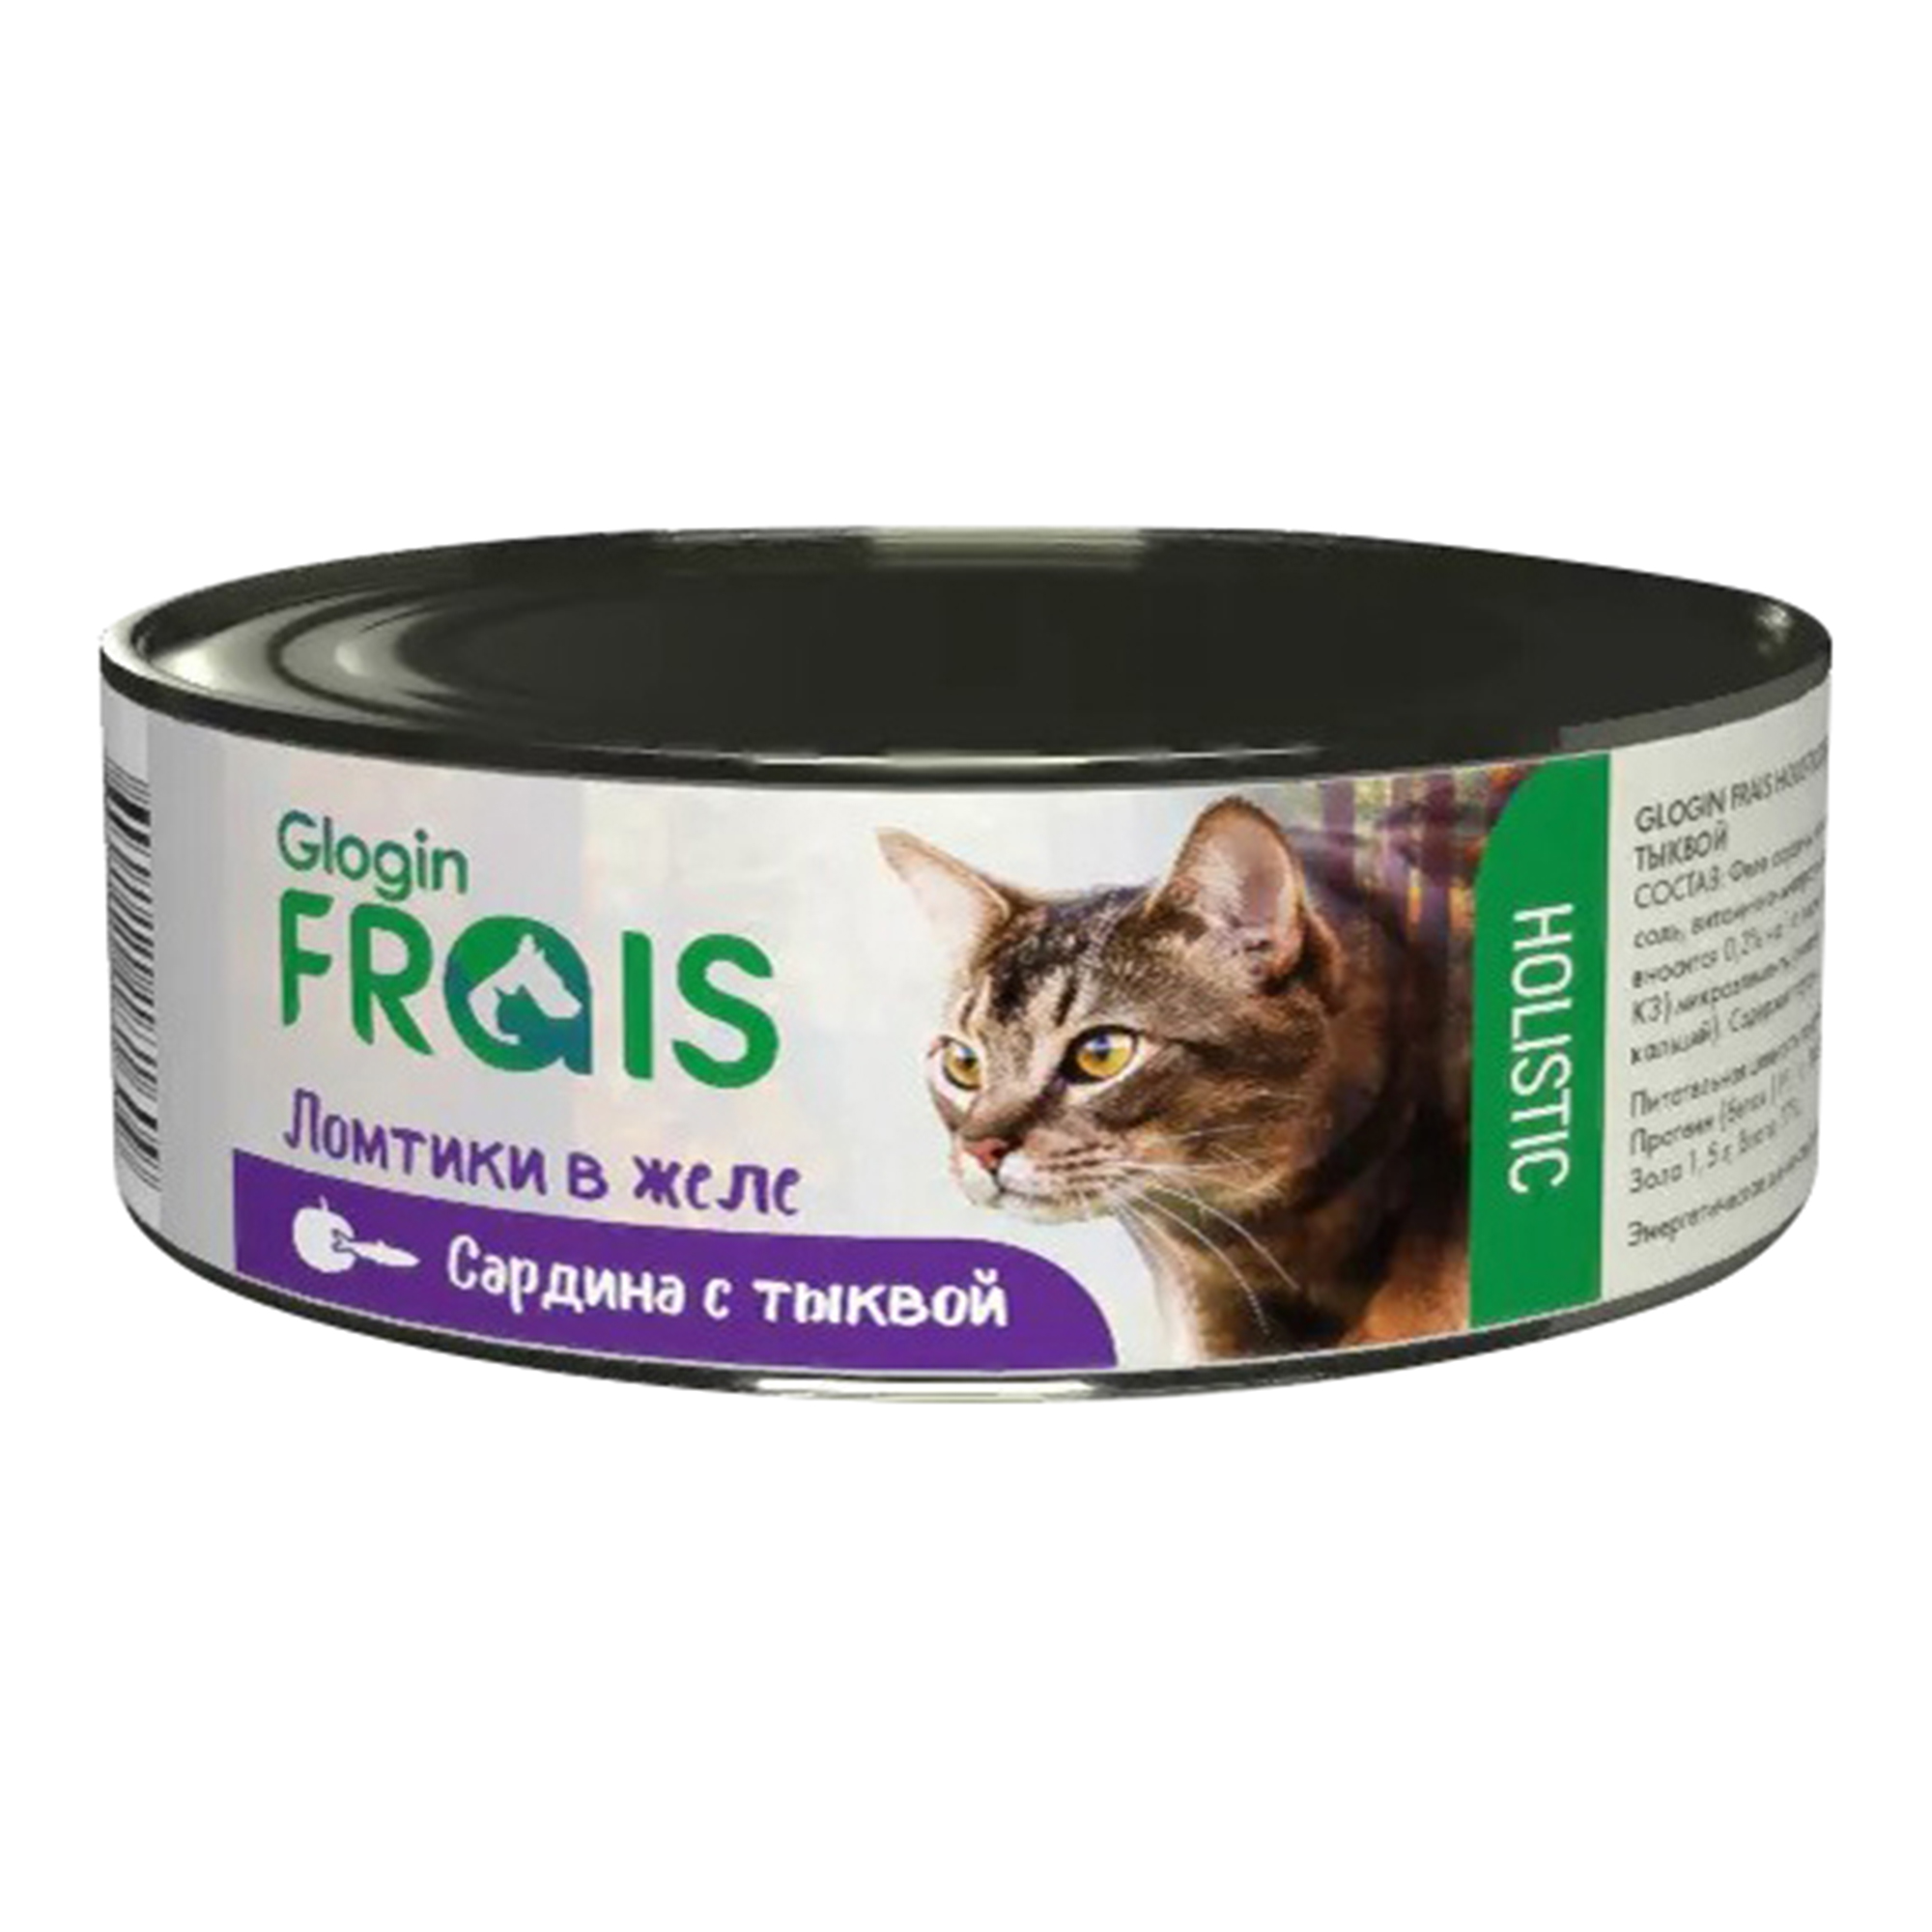 Консервы для кошек FRAIS Holistic cat, рыба, тыква, 100г